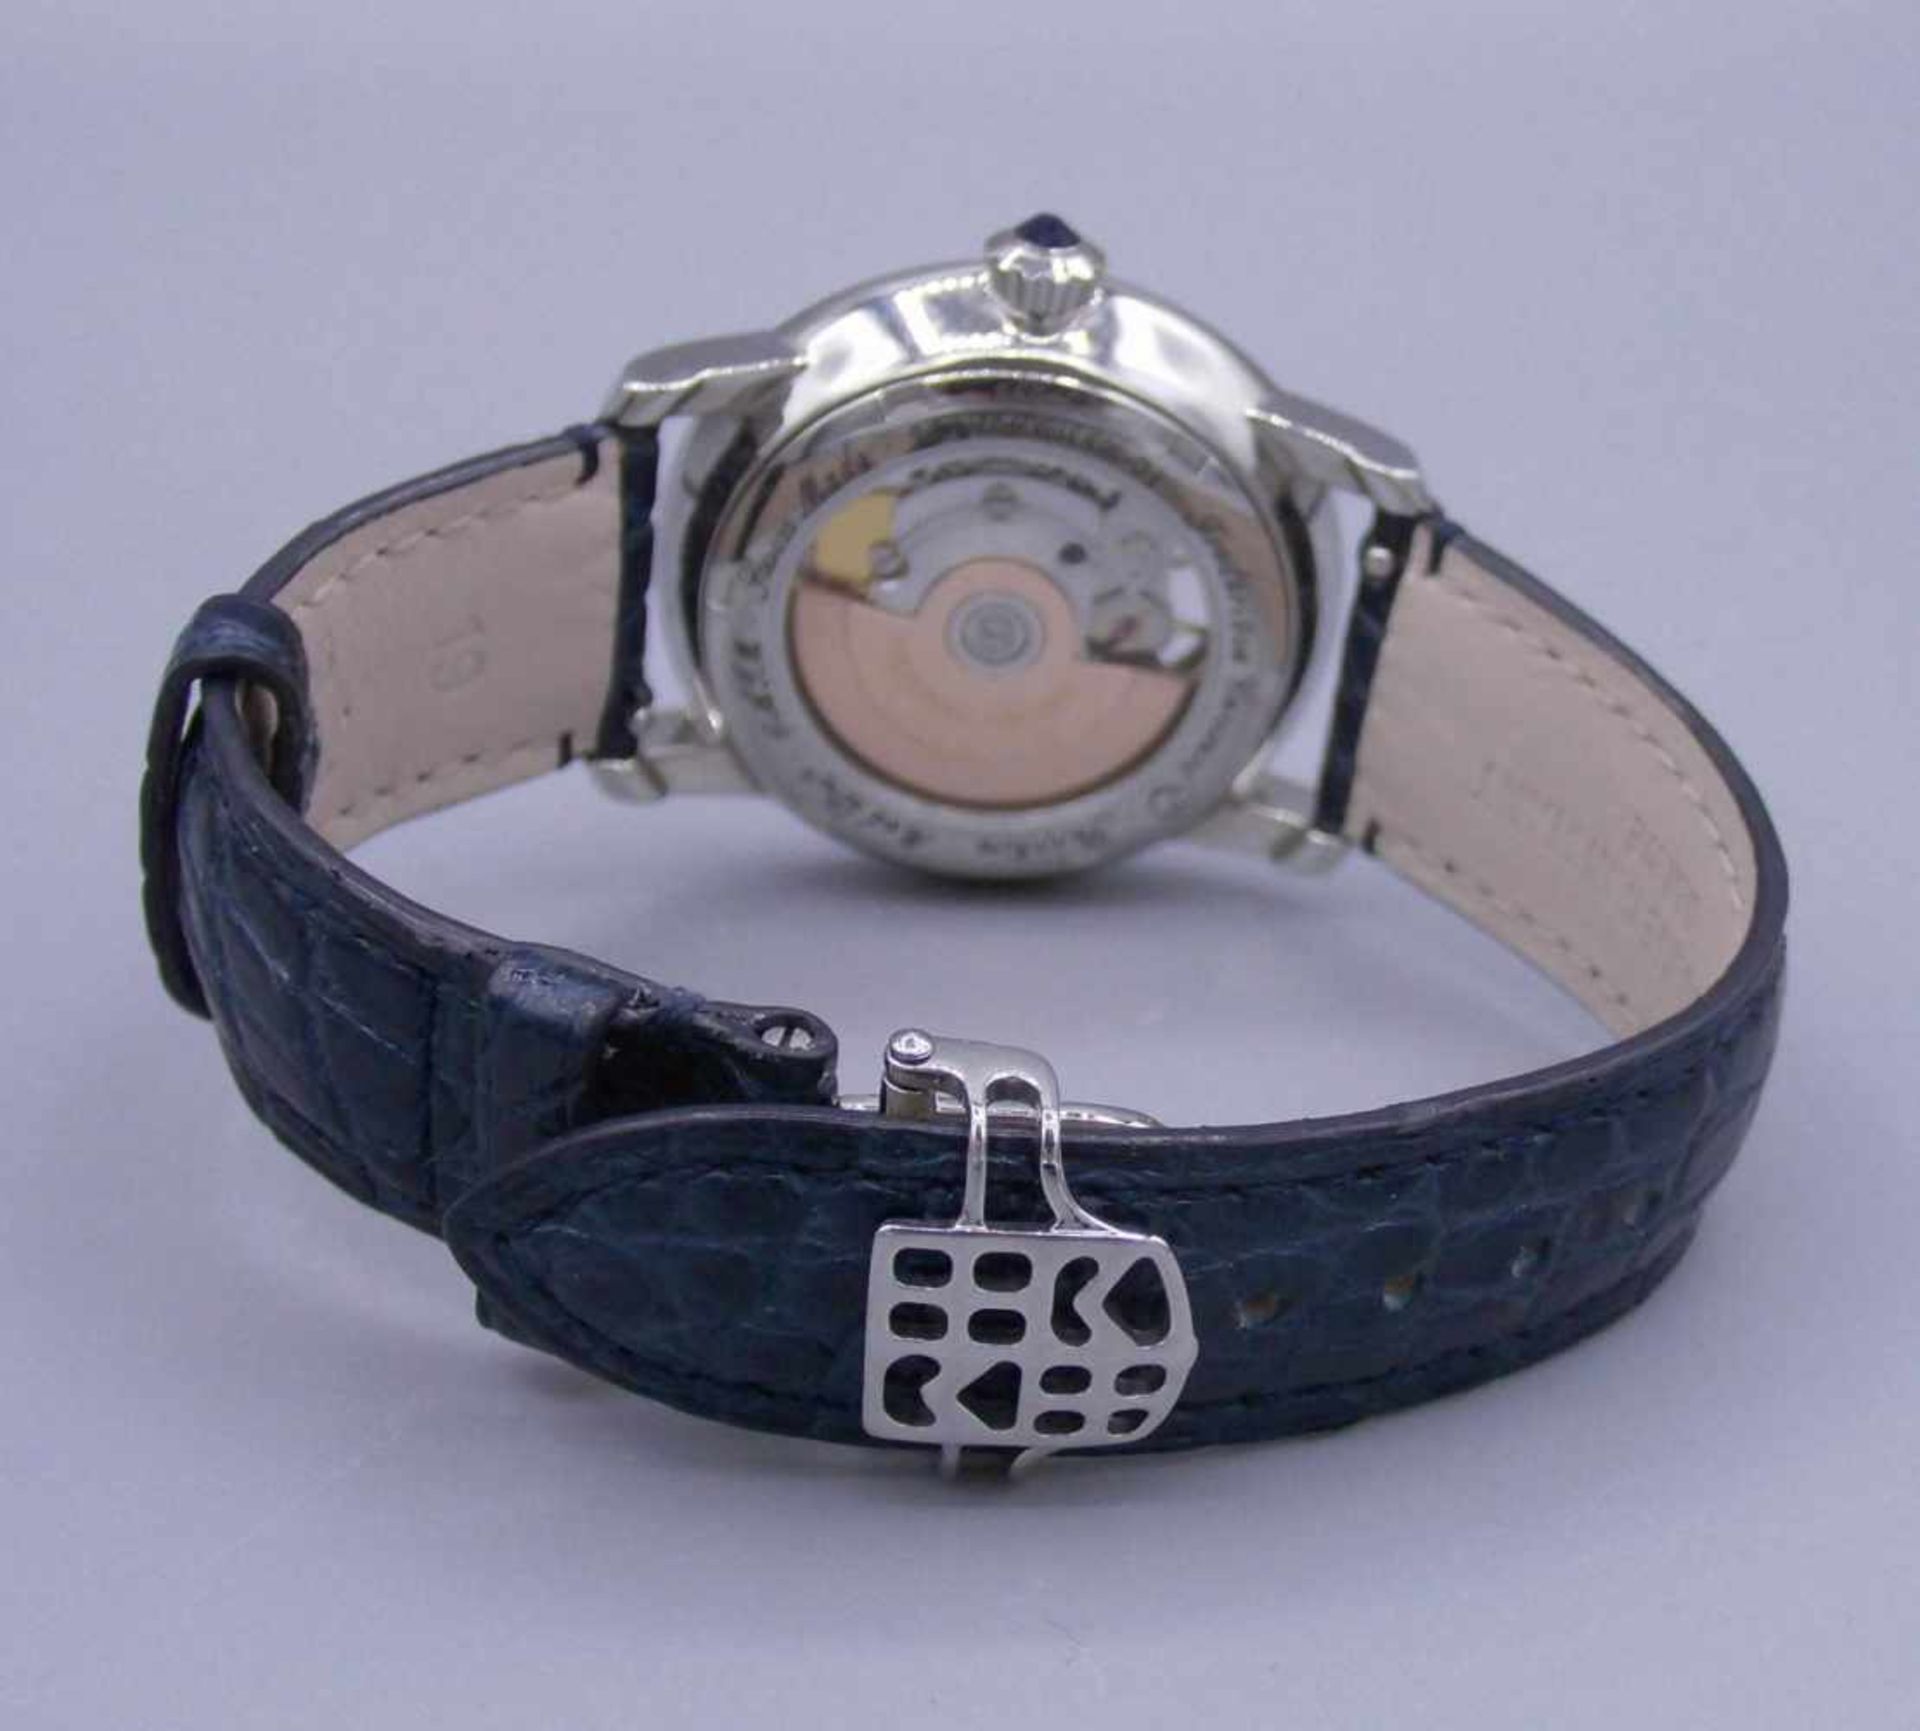 DAMEN ARMBANDUHR : FREDERIQUE CONSTANT "HEART BEAT" / ladys wristwatch with diamonds, Automatik-Uhr, - Bild 6 aus 9